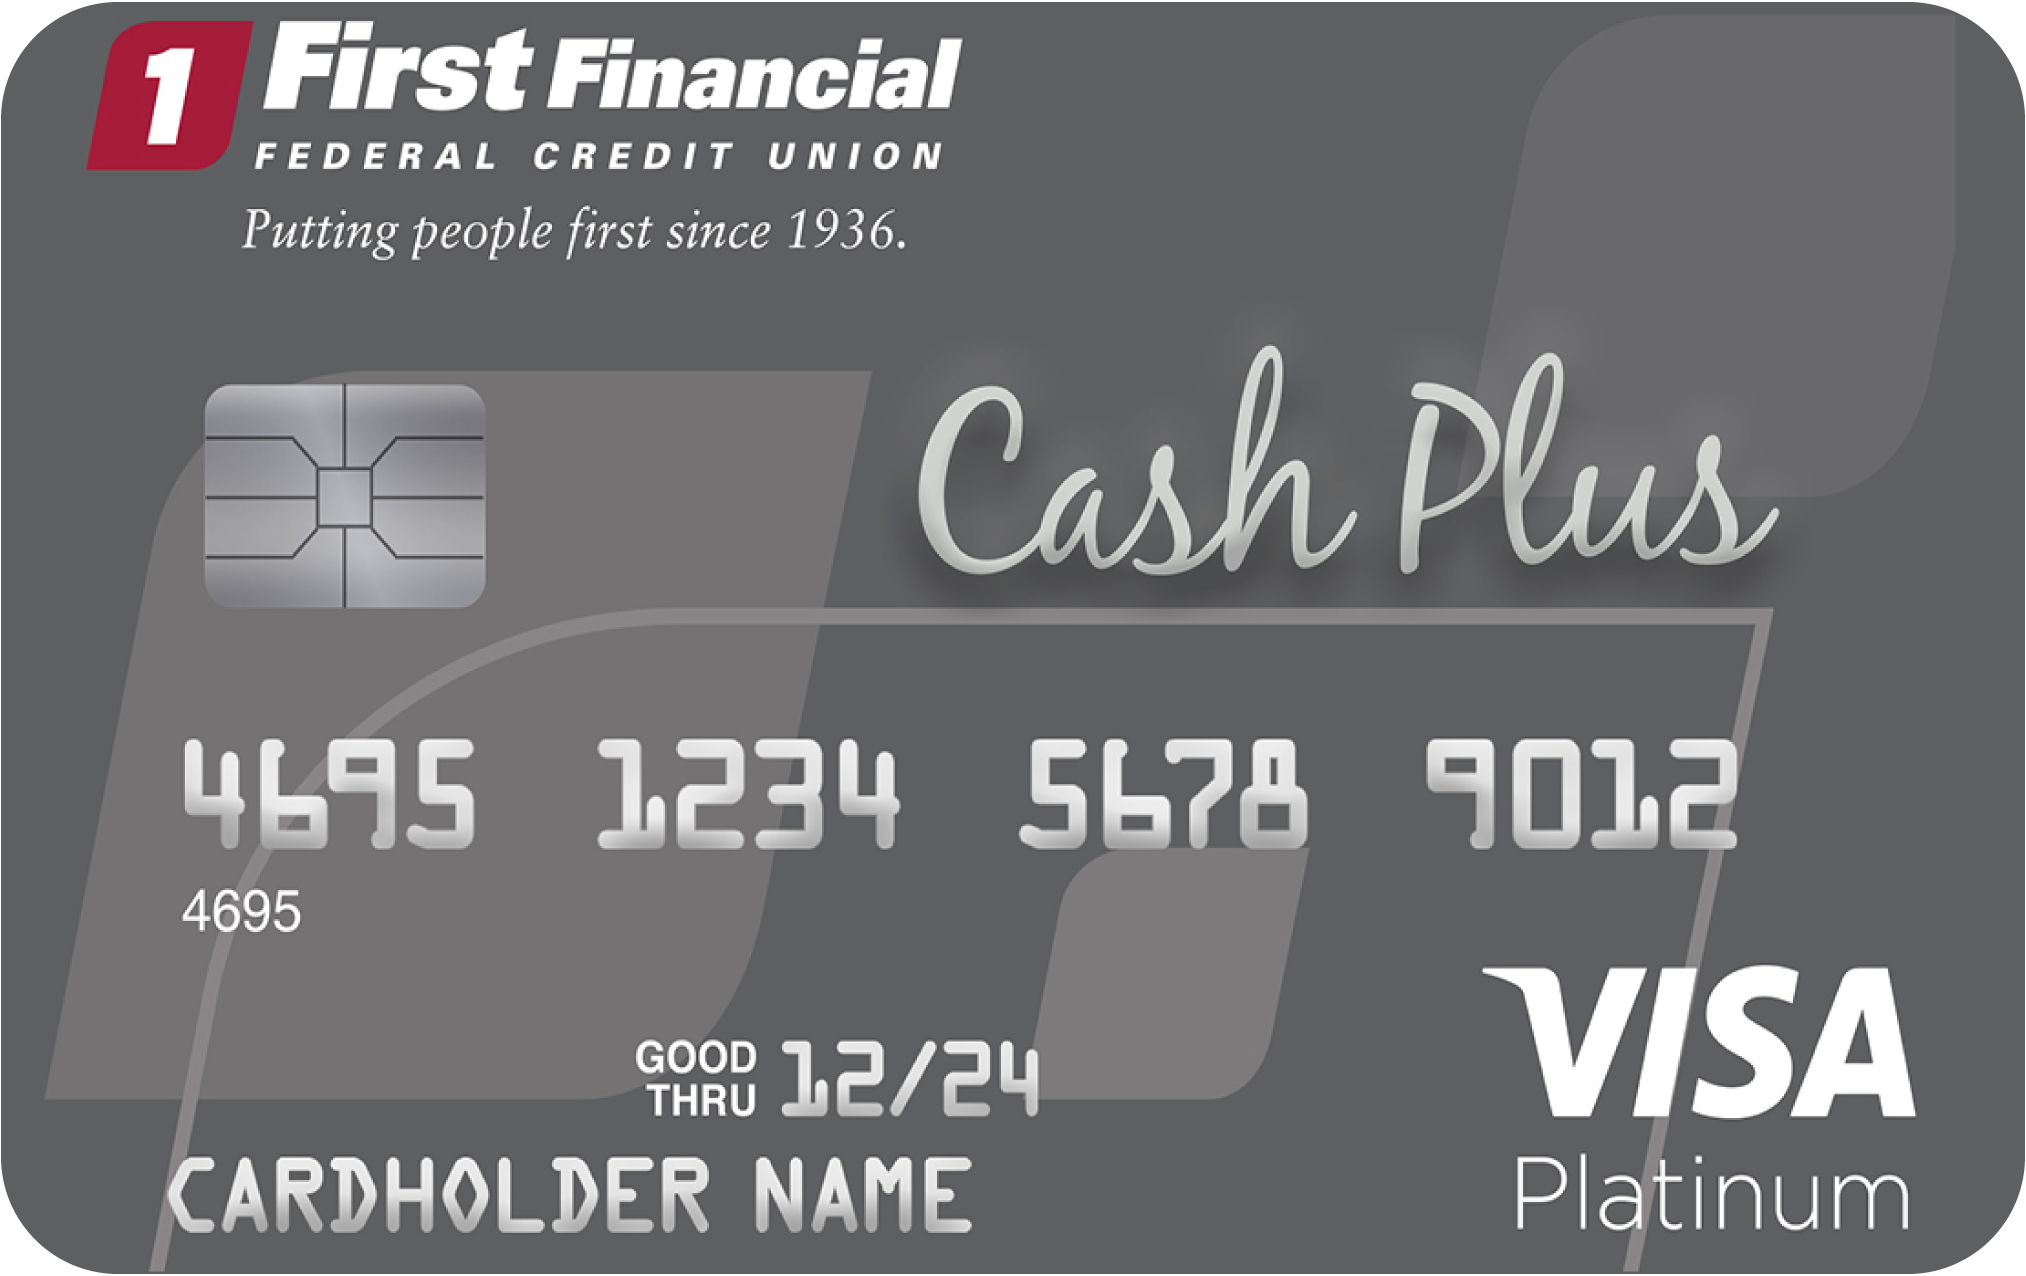 VISA platinum cash plus card